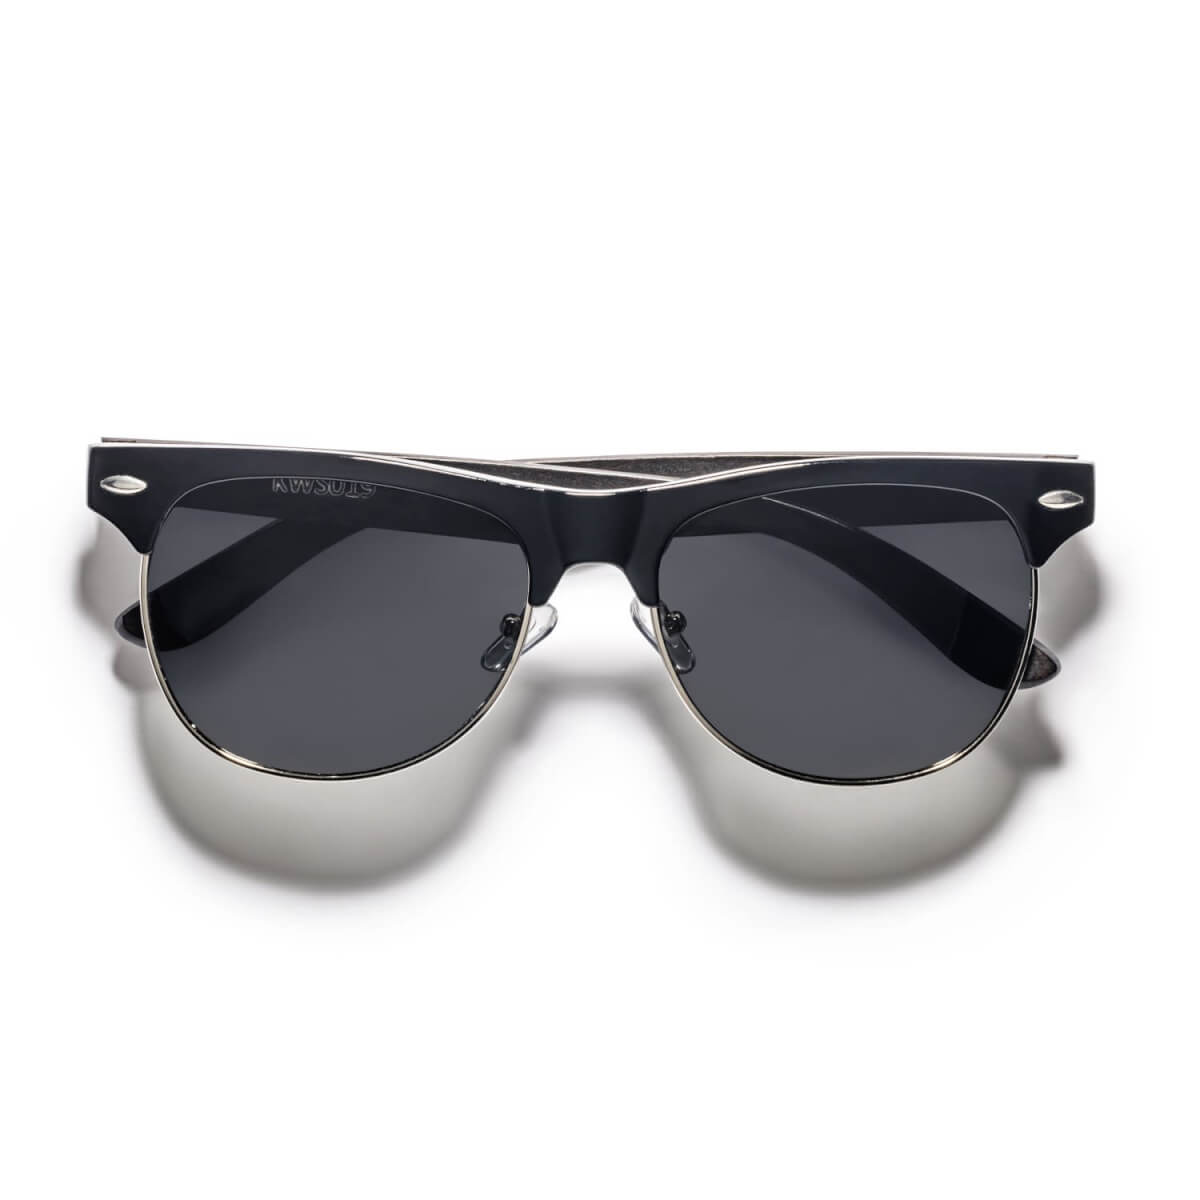 black wooden frame sunglasses